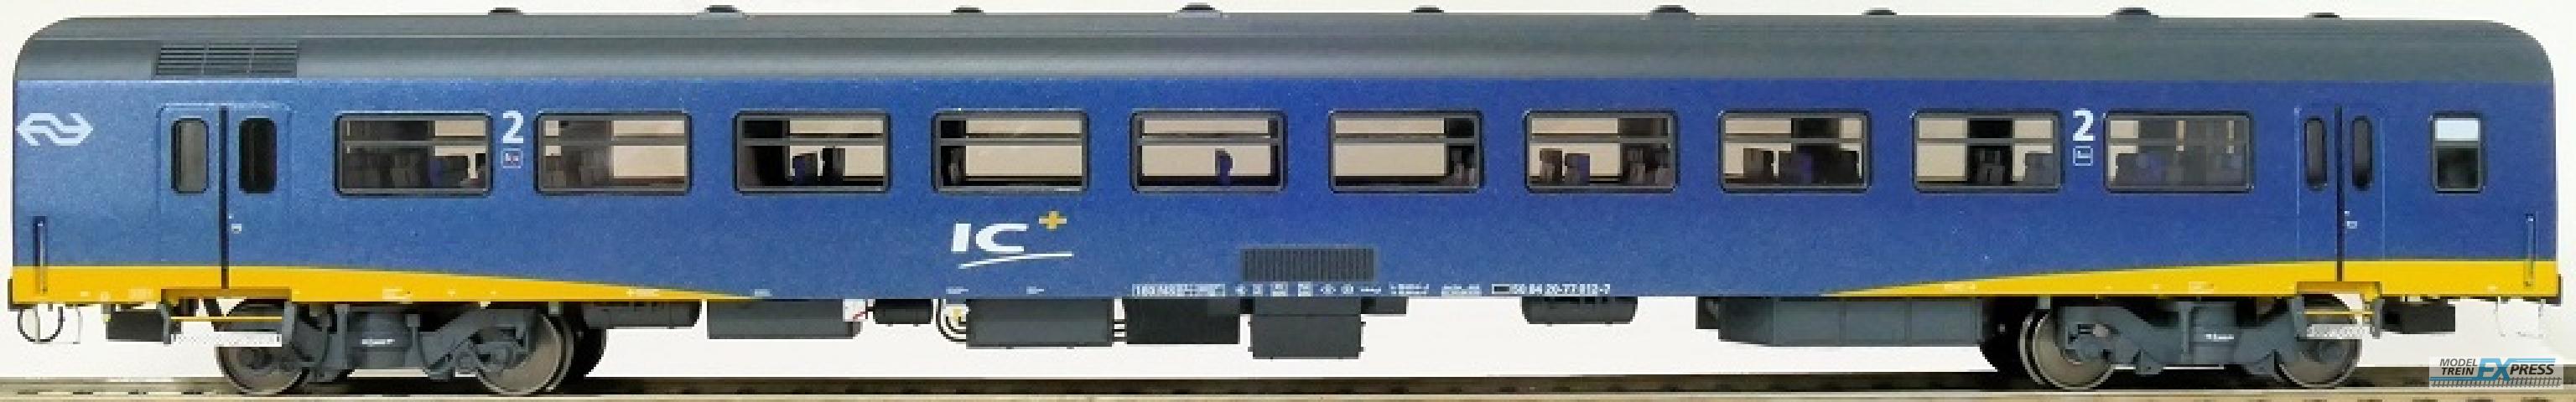 Exact-train 11125 NS ICR Plus Reisezugwagen B ( Farbe Blau), Ep. IV